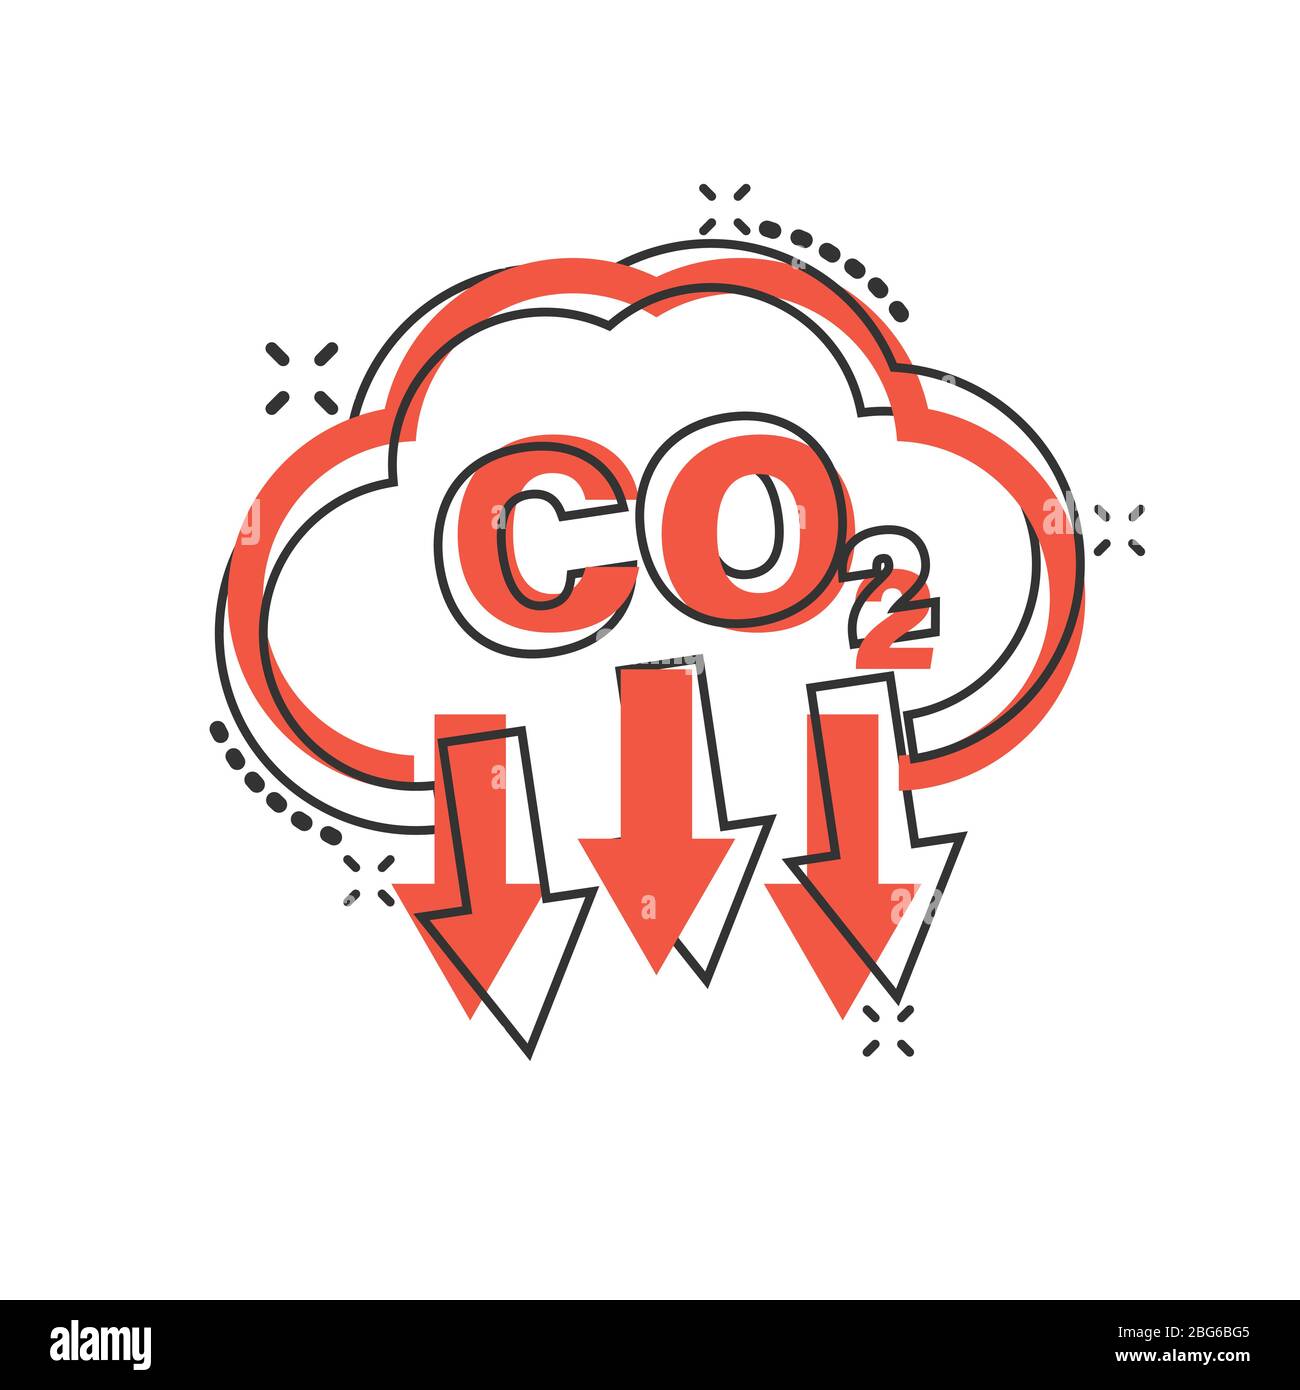 CO2-Ikone im Comic-Stil. Emission Cartoon Vektor Illustration auf weißem isolierten Hintergrund. Geschäftskonzept zur Reduzierung von Spritzern. Stock Vektor